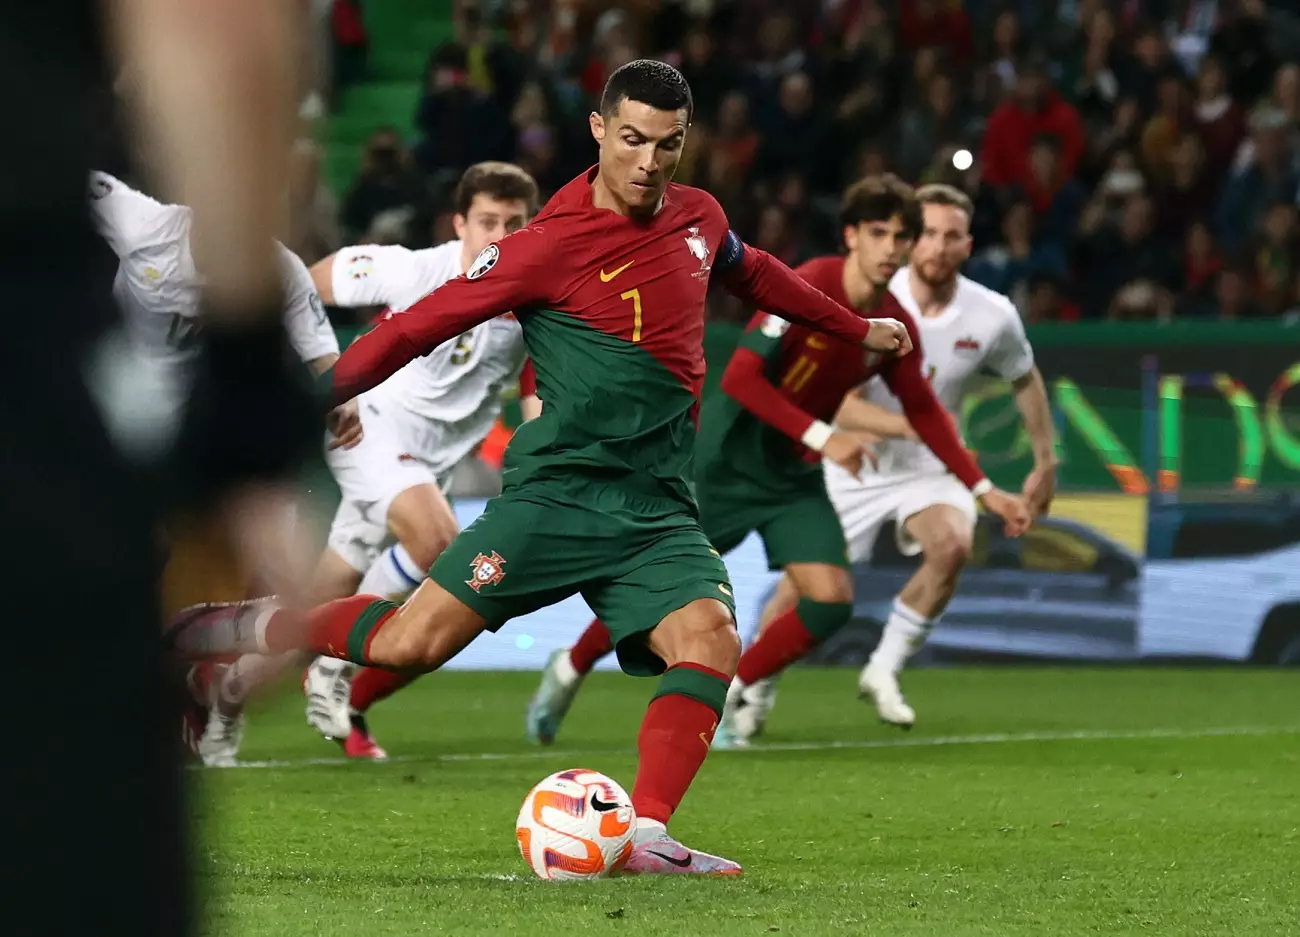 Cetak 2 Gol untuk Timnas Portugal, Ronaldo Pecahkan Rekor